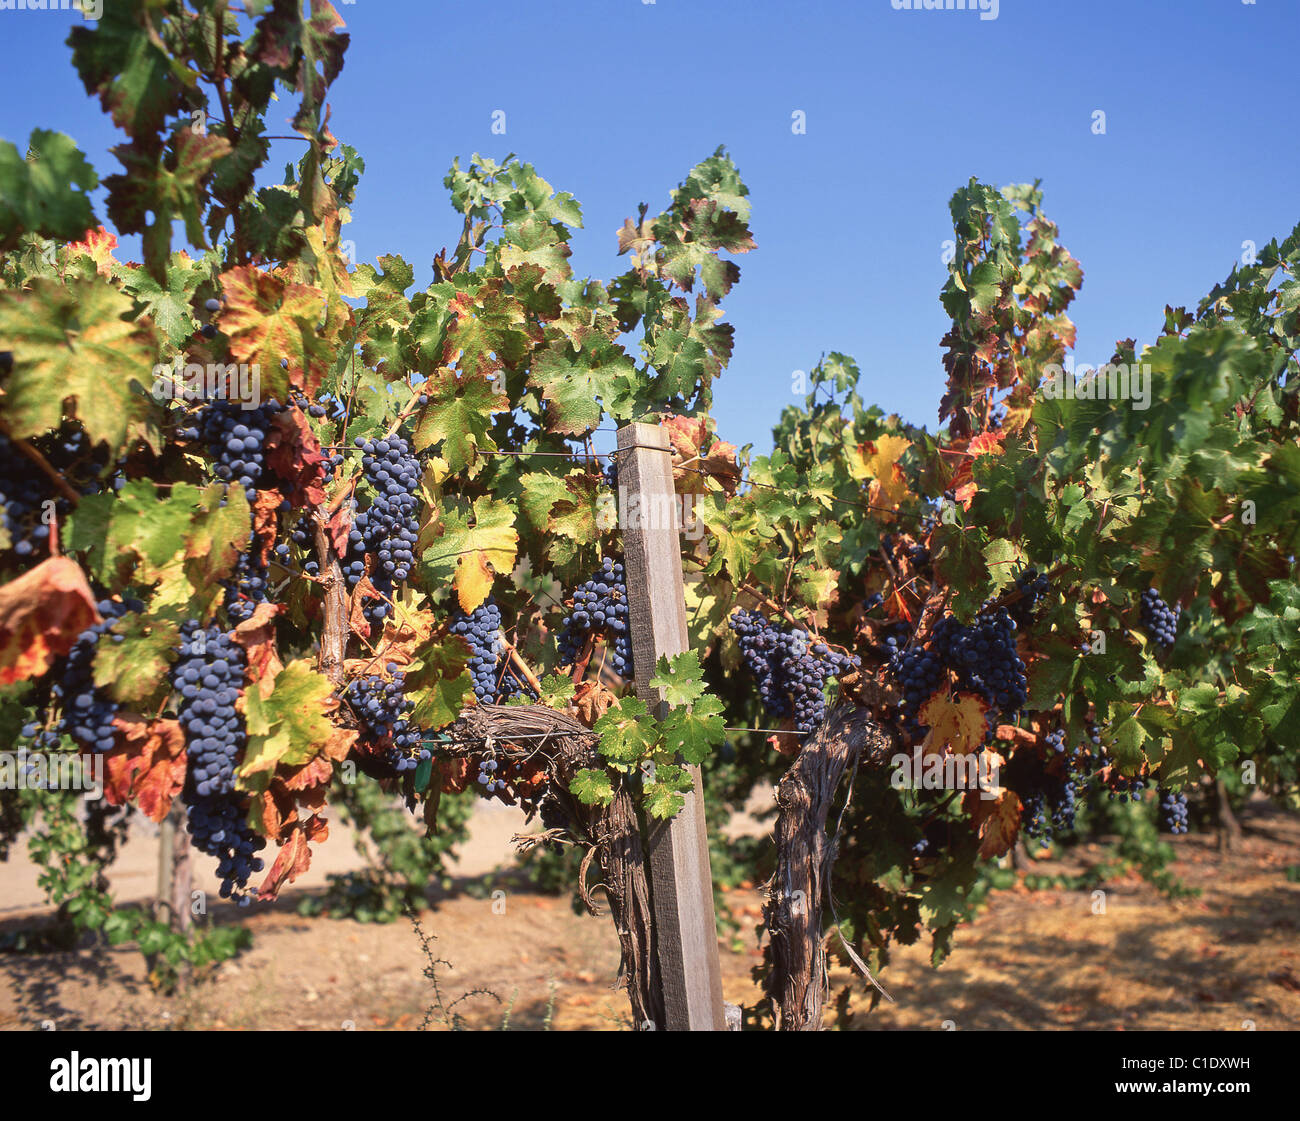 Les raisins rouges sur des vignes à Vineyard, Napa Valley, Californie, États-Unis d'Amérique Banque D'Images